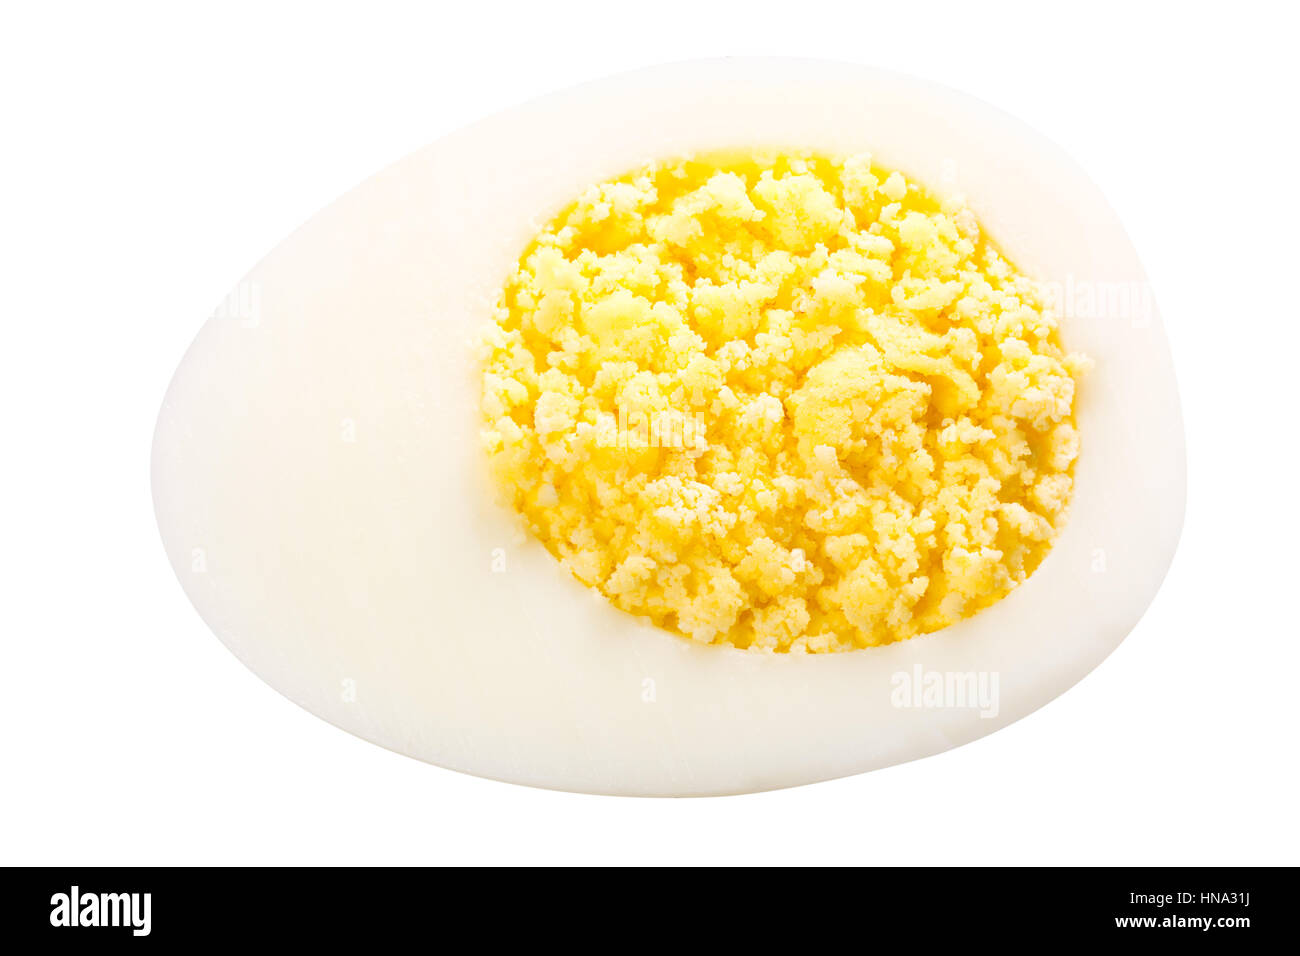 Die Hälfte gekochtes Huhn Ei, das Eigelb ist rund gestaltet. Clipping-Pfad, schattenfreie Stockfoto